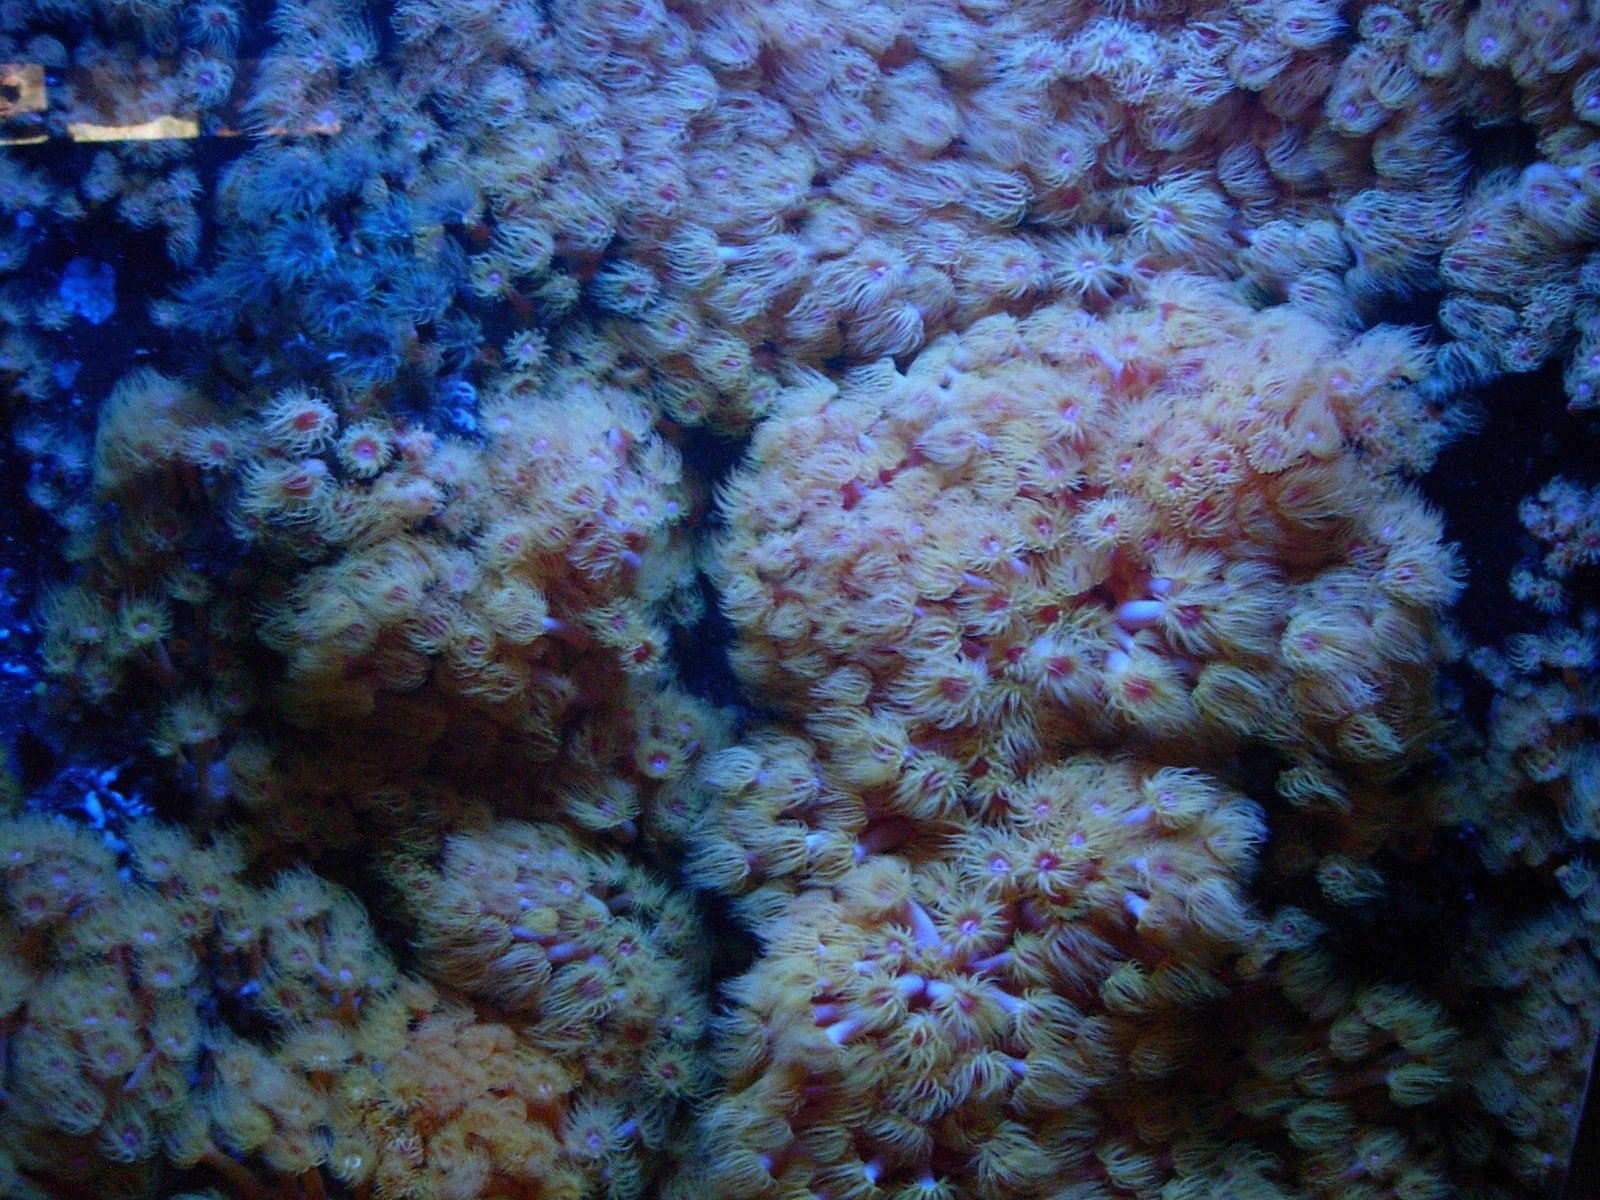 Los arrecifes coralinos, básicos para la alimentación de numerosas especies marinas, están amenazados por la acción humana, una tendencia que debe y puede invertirse. Imagen: Schnuffel.